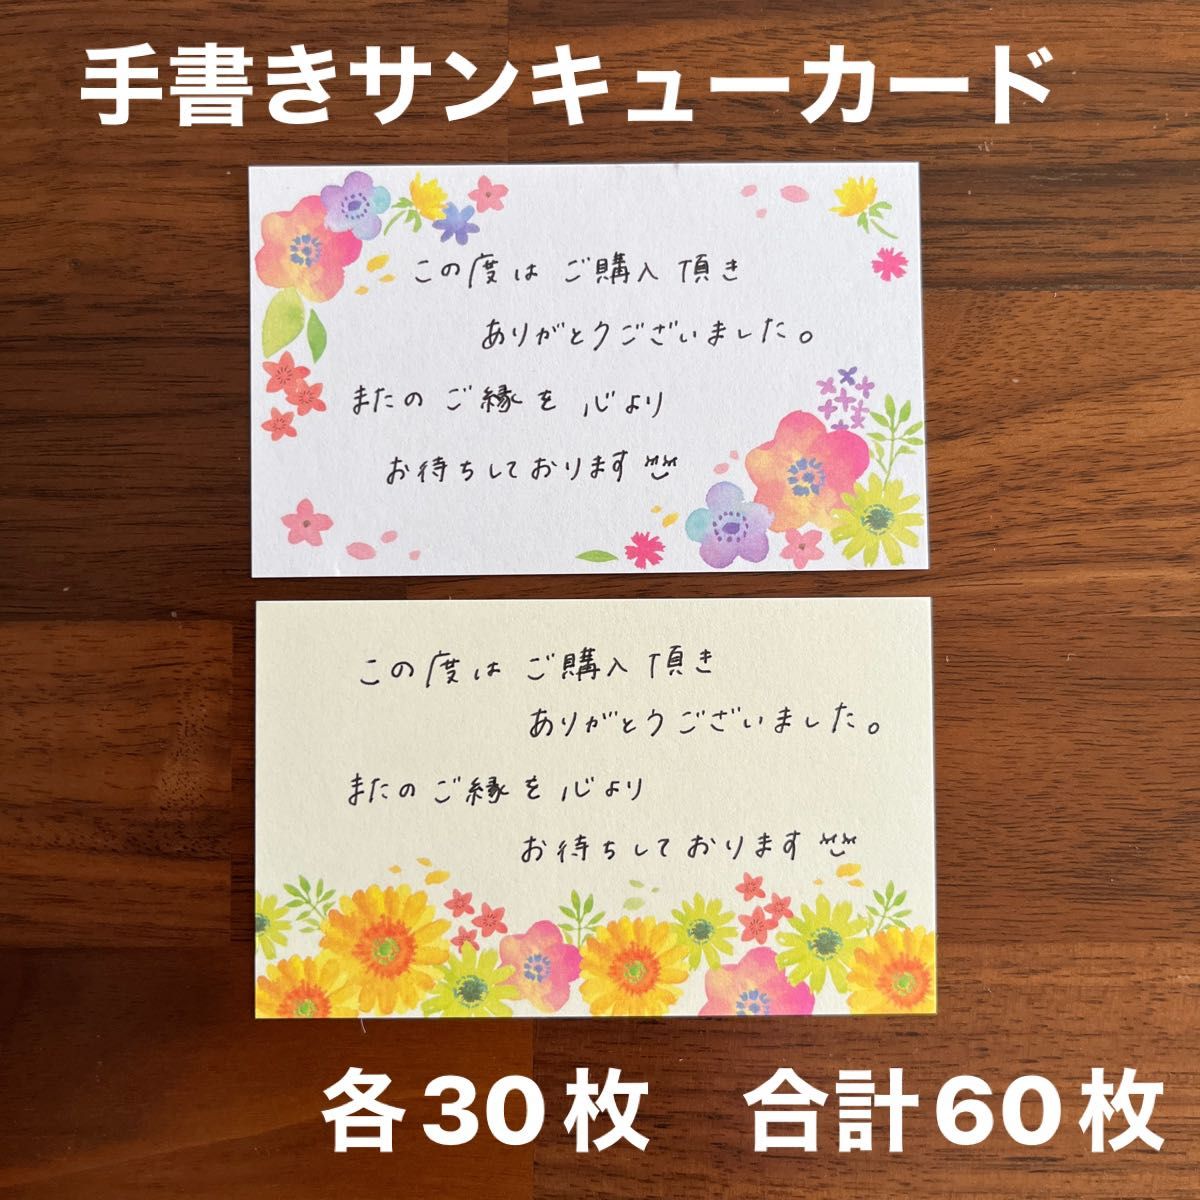 サンキューカード 手書き 30枚 メッセージカード ハンドメイド｜PayPay 